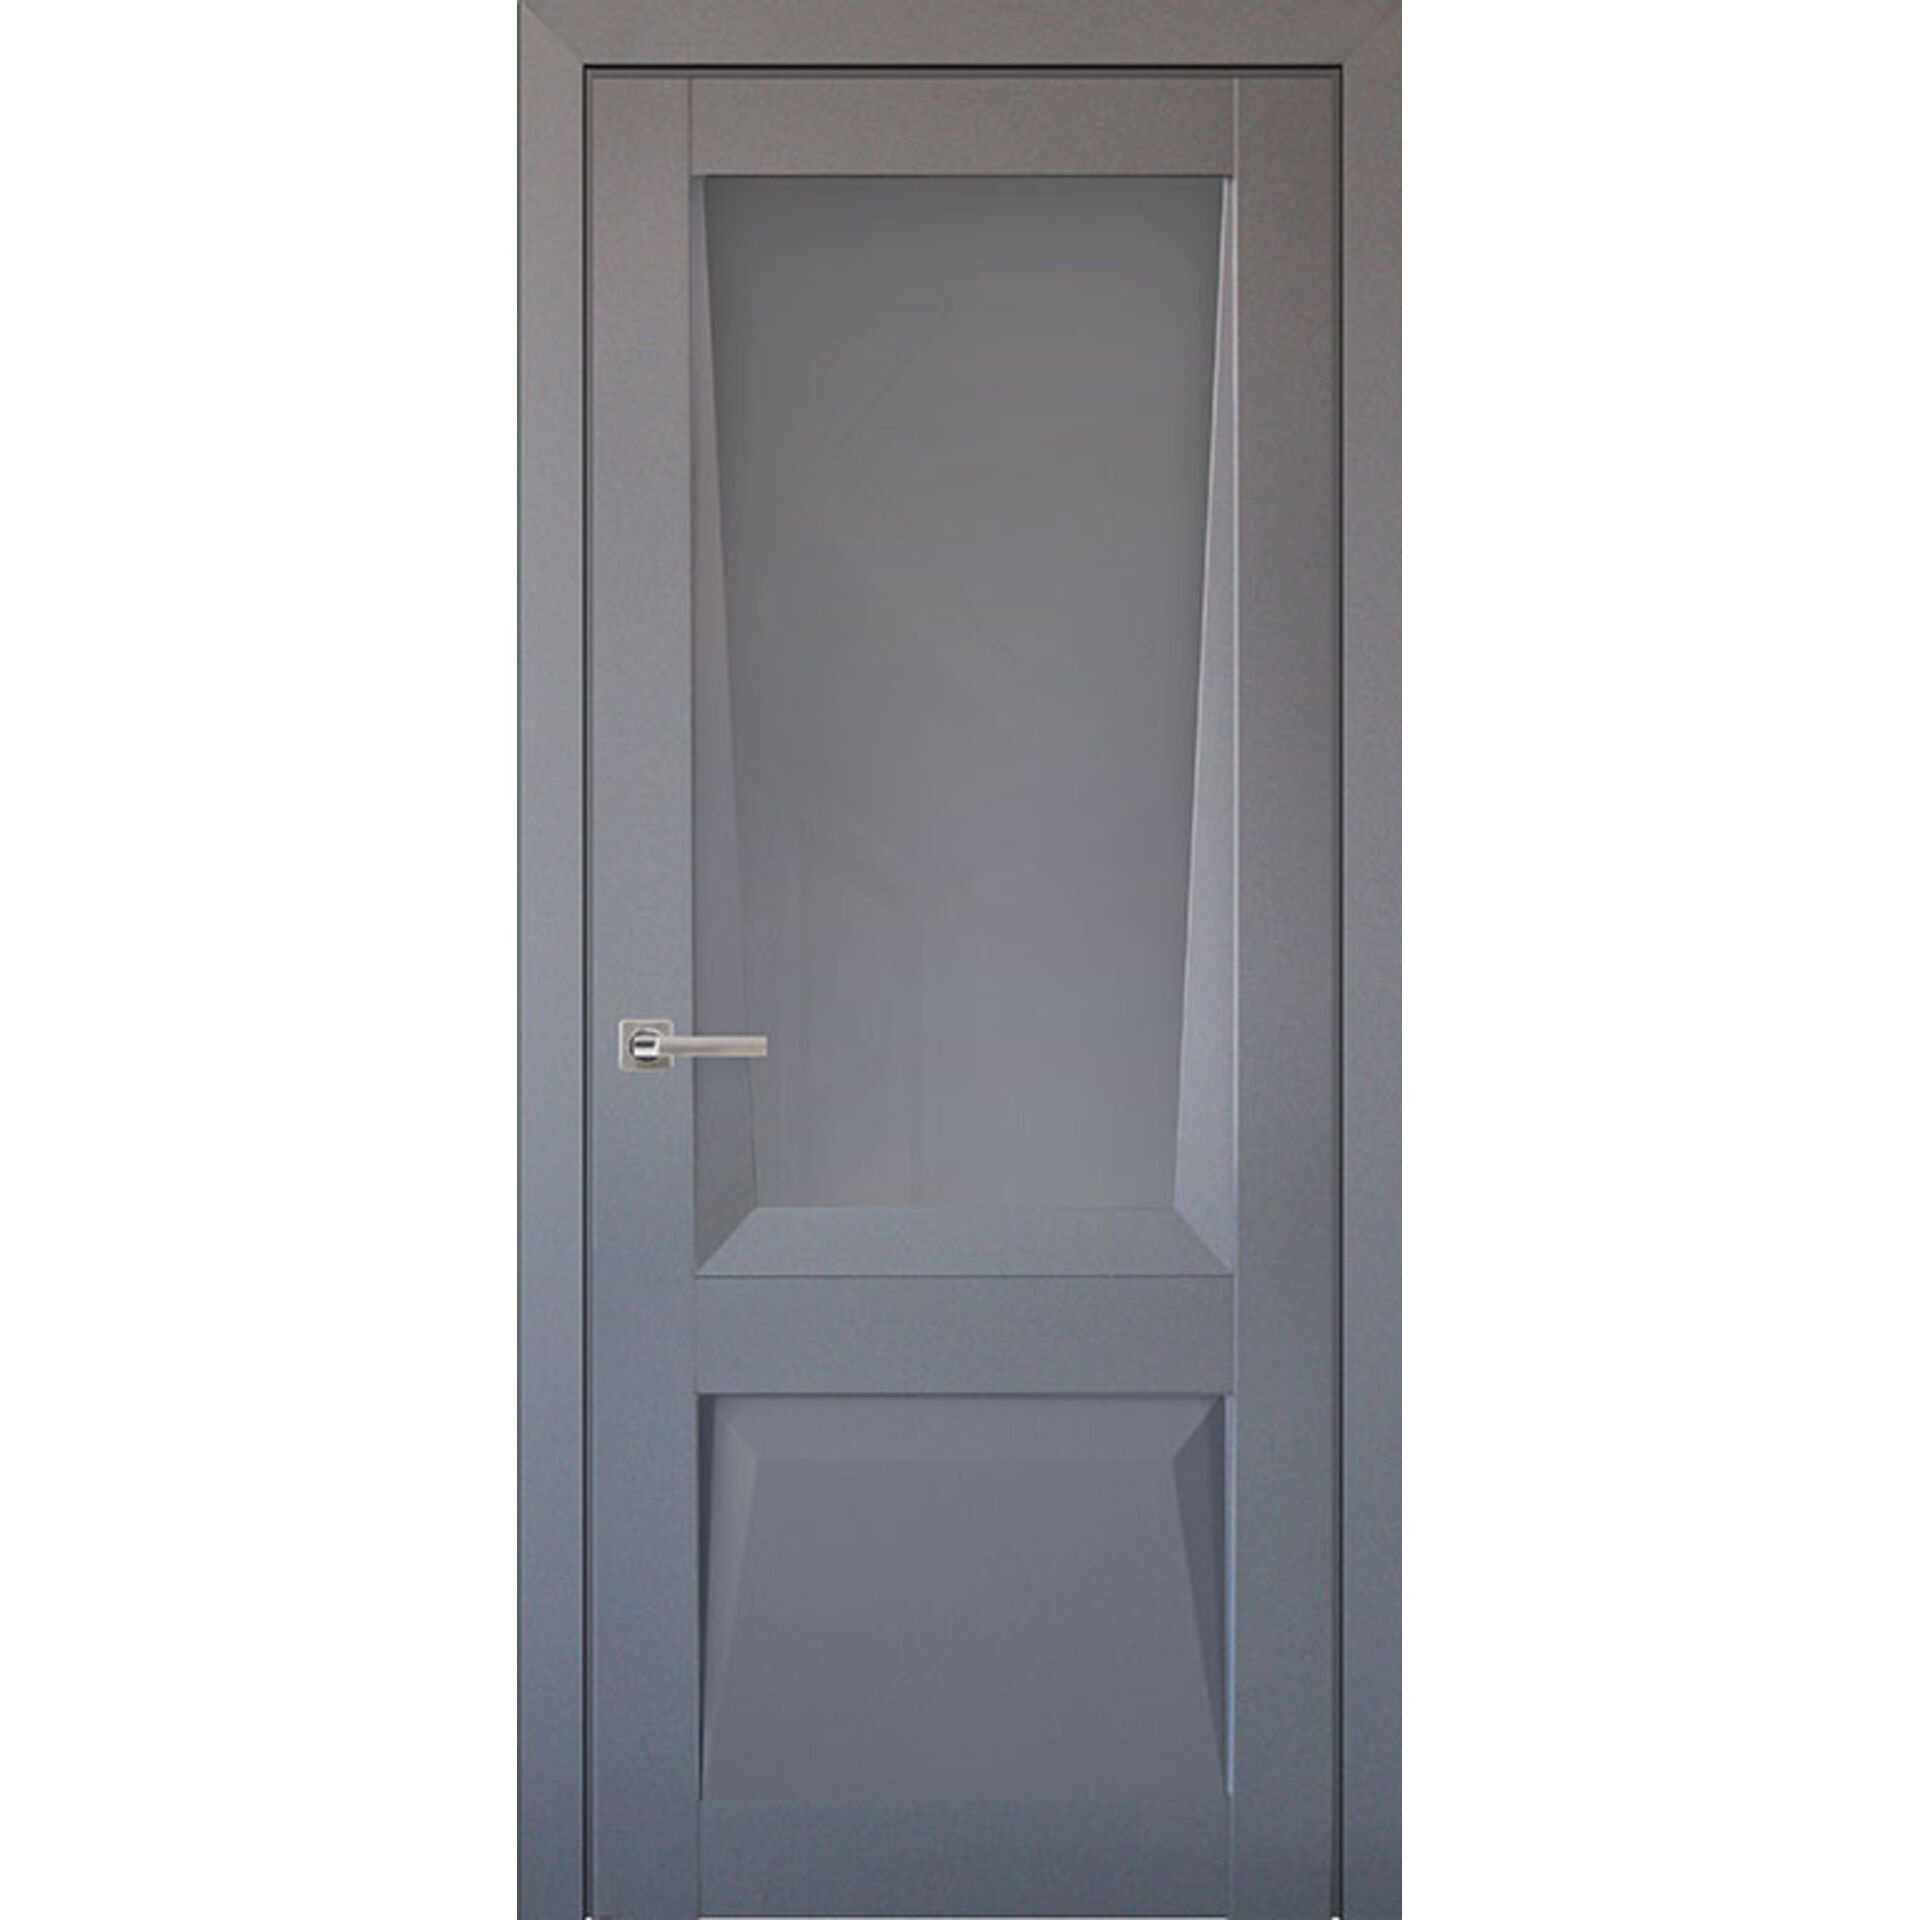 Двери межкомнатные Perfecto 106 серый бархат, полотно остекленное 80*200